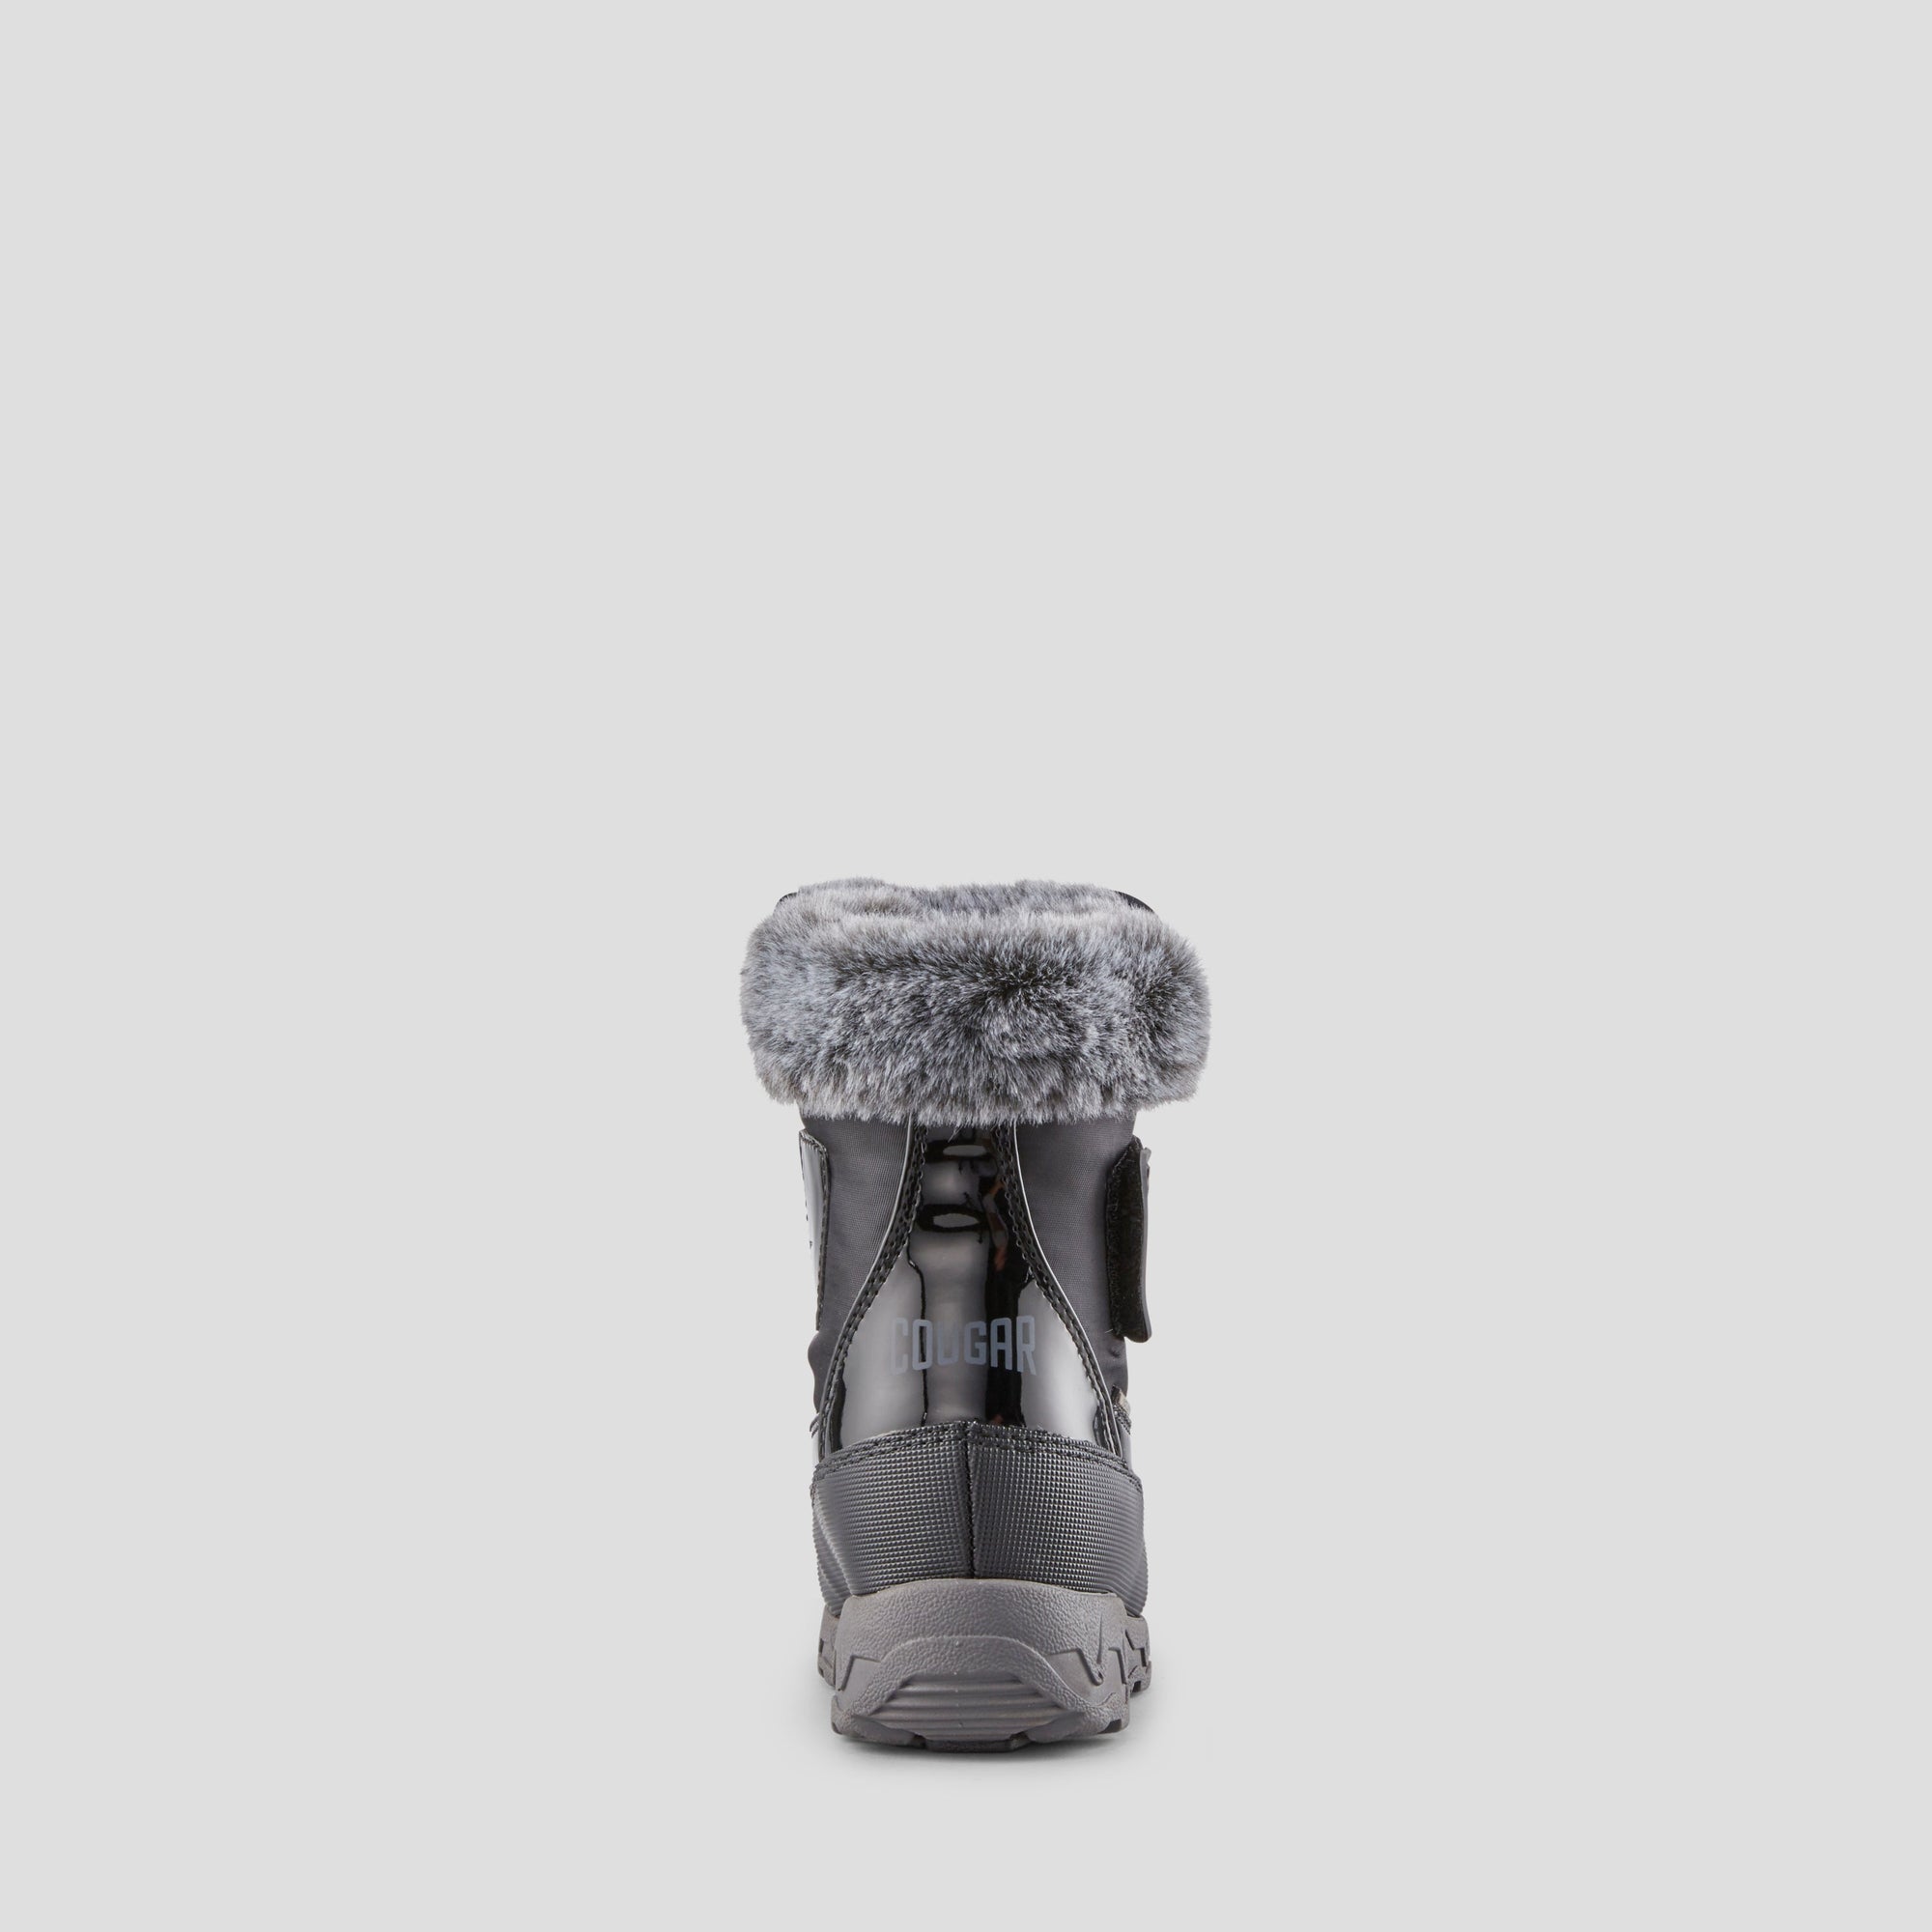 Soar - Botte d'hiver imperméable en nylon (Tout-petit et Juniors) - Colour Black